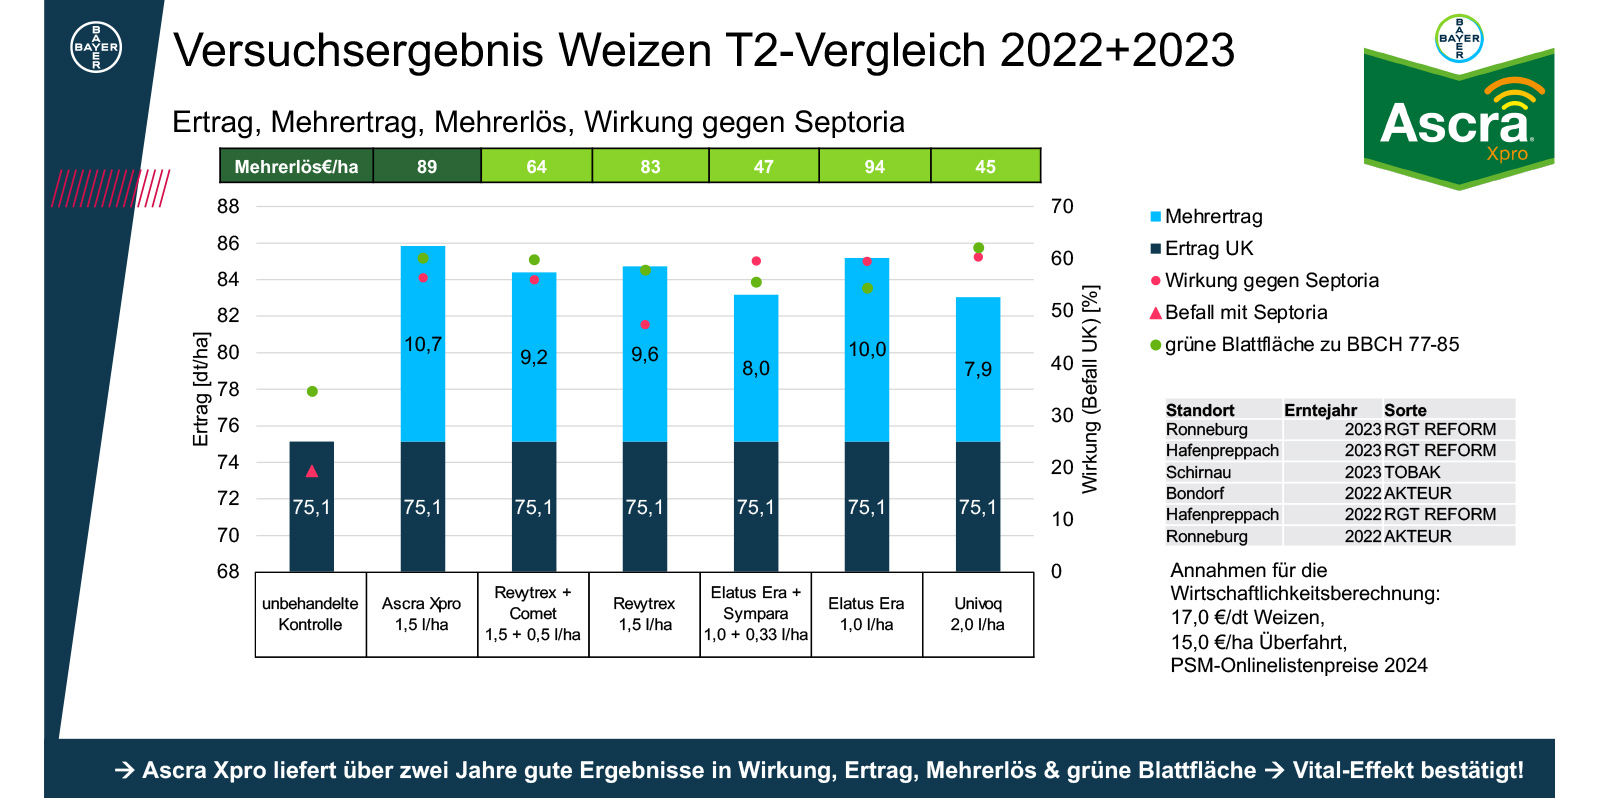 Versuchsergebnis Weizen T2-Vergleich 2022+2023